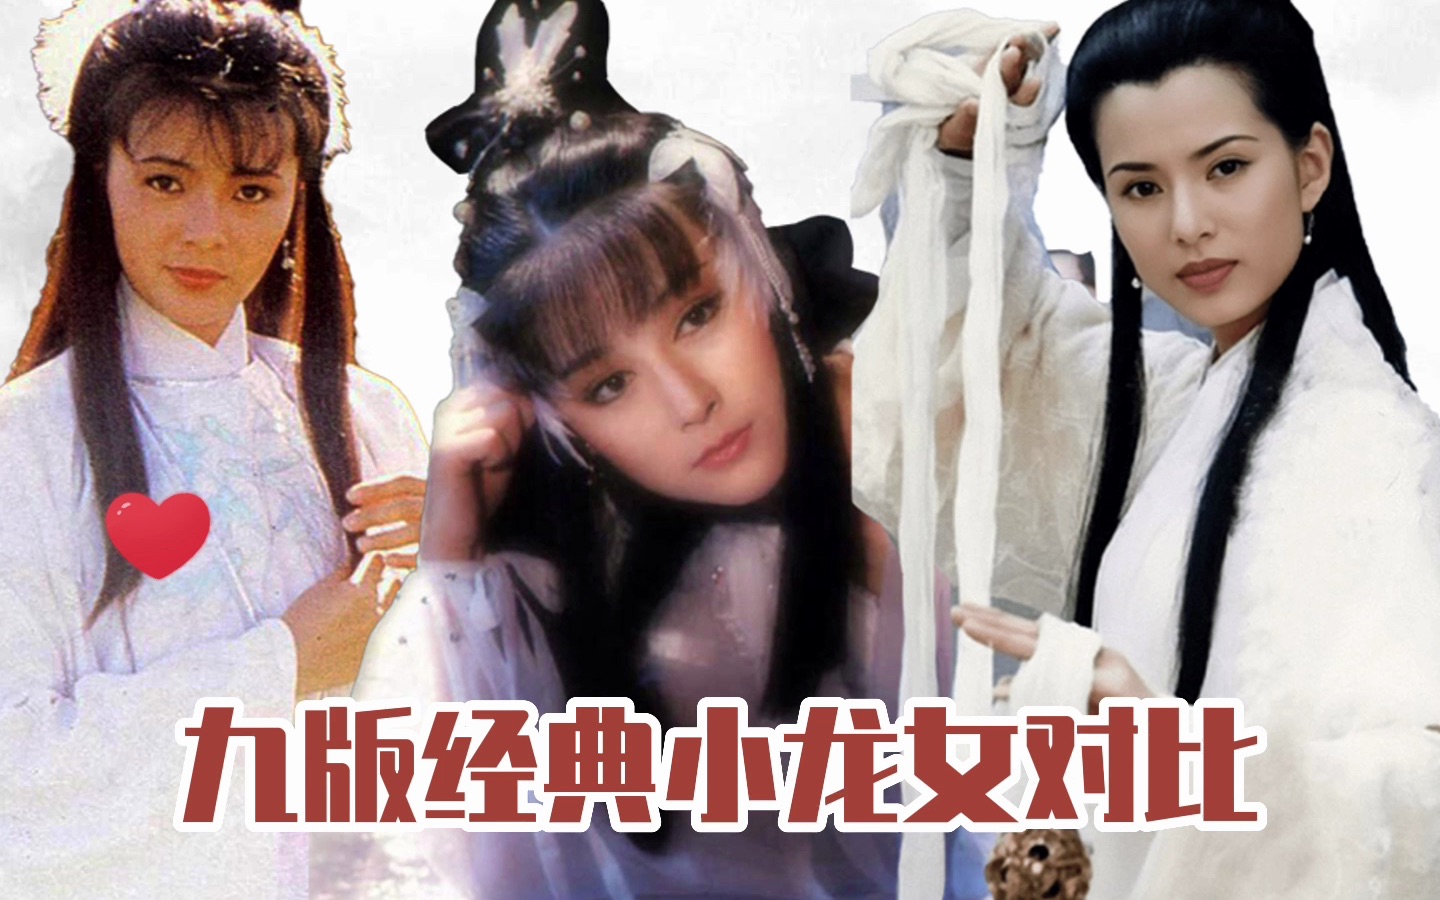 刘亦菲 小龙女 2006电视剧《神雕侠侣》 … - 高清图片，堆糖，美图壁纸兴趣社区